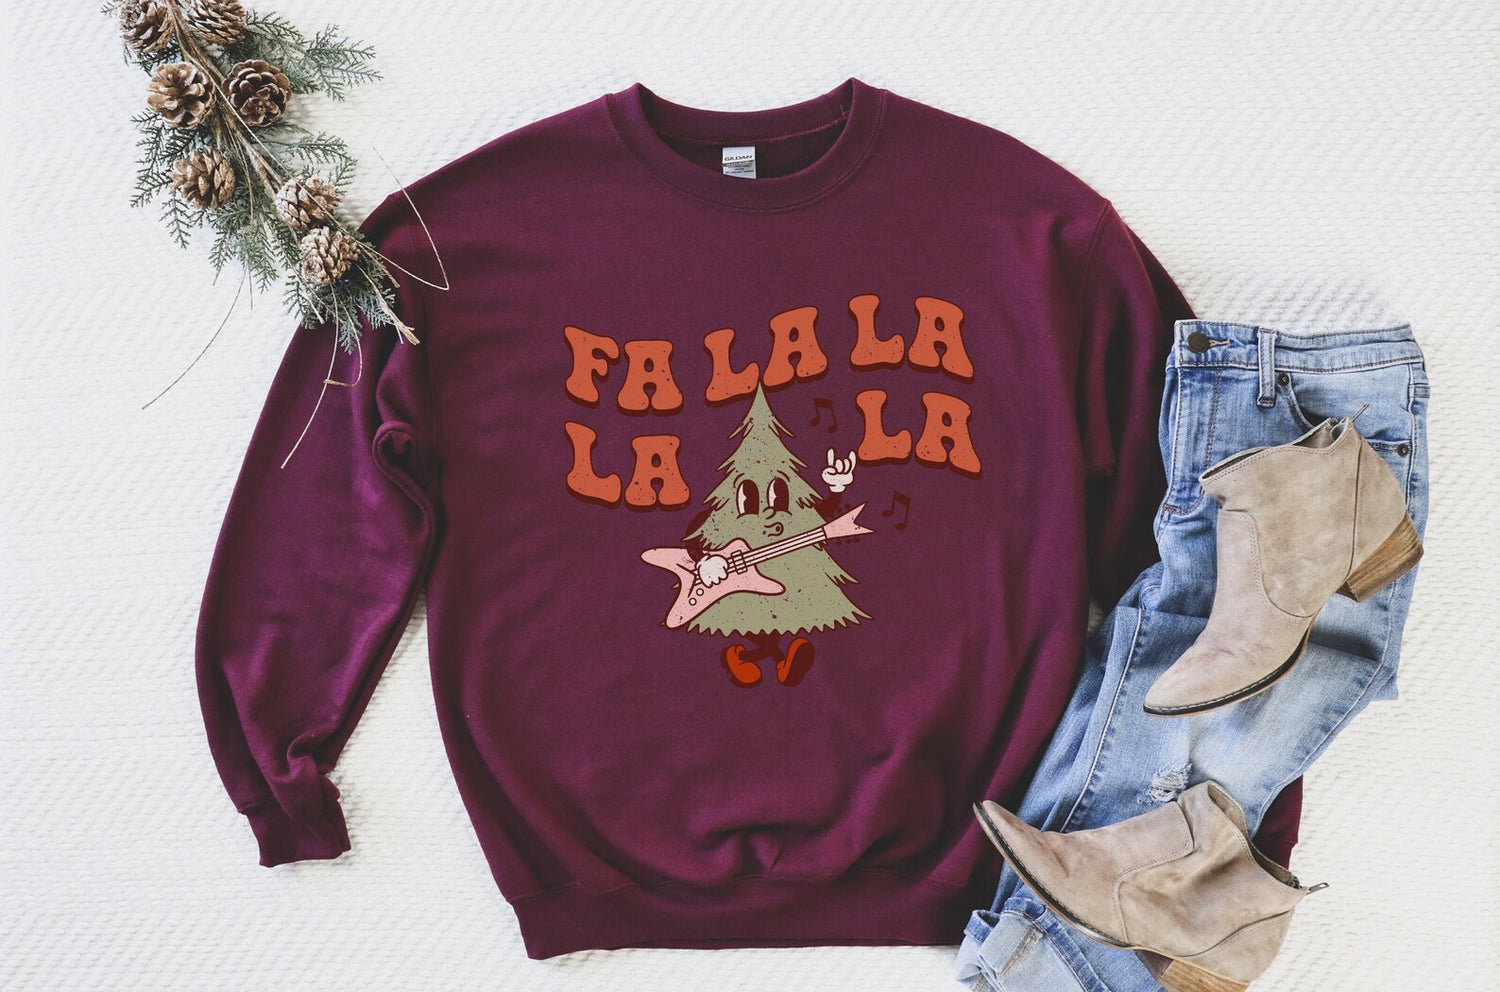 Fa La La La La Christmas Tree Sweatshirt